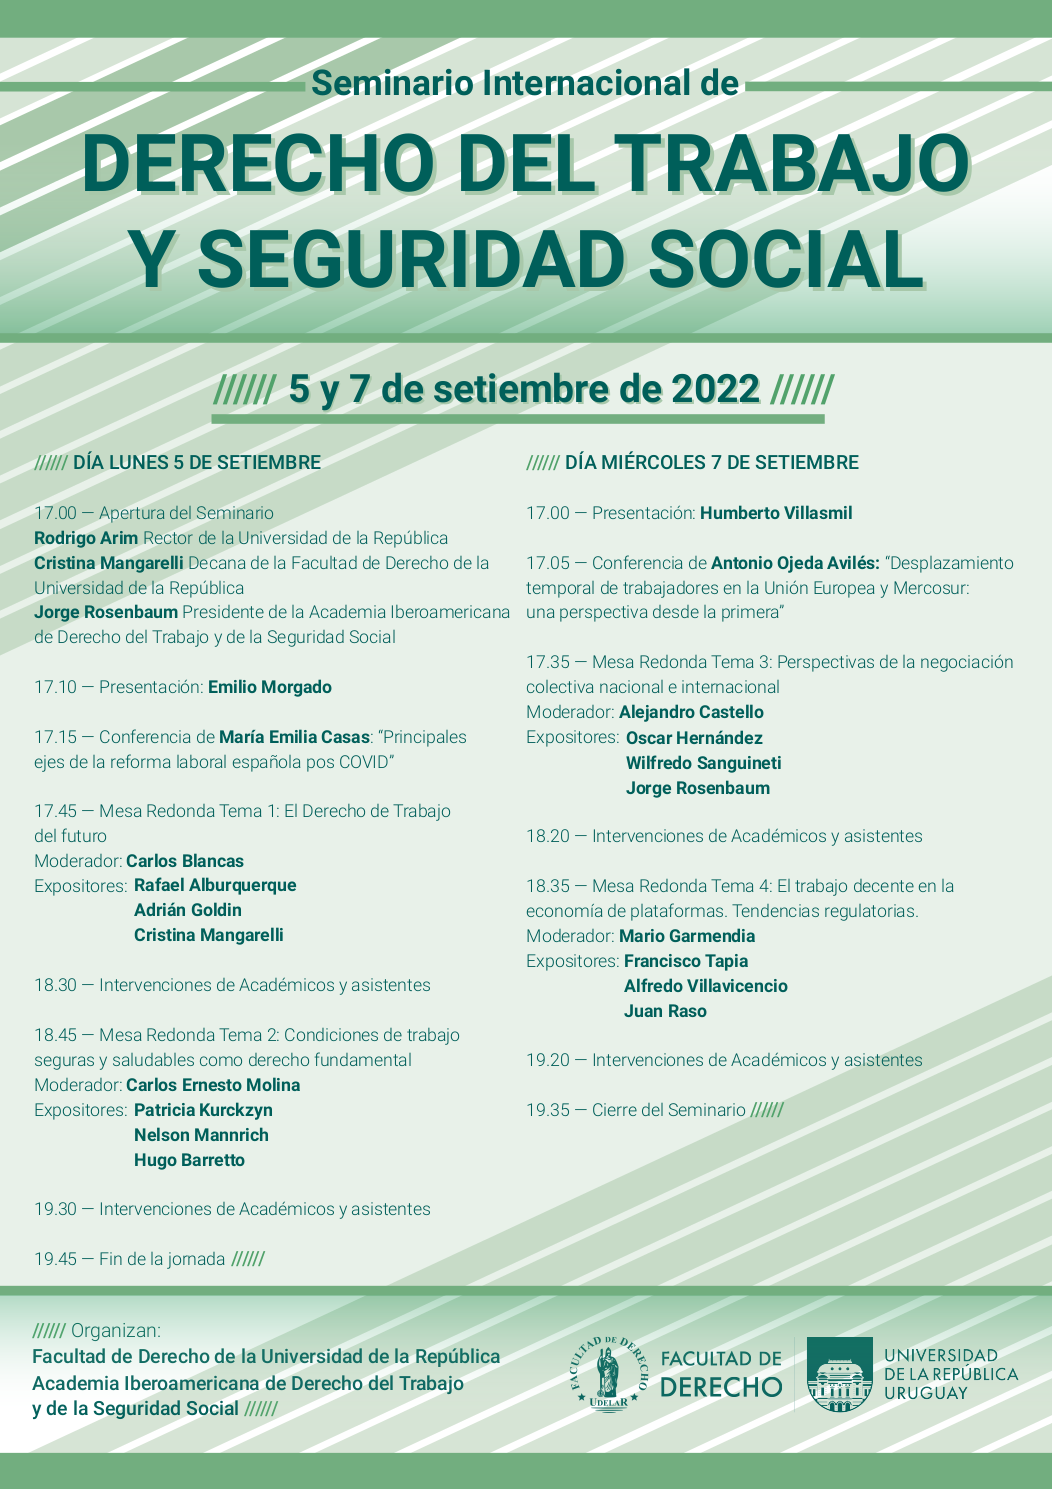 Seminario Internacional de Derecho del Trabajo y la Seguridad Social